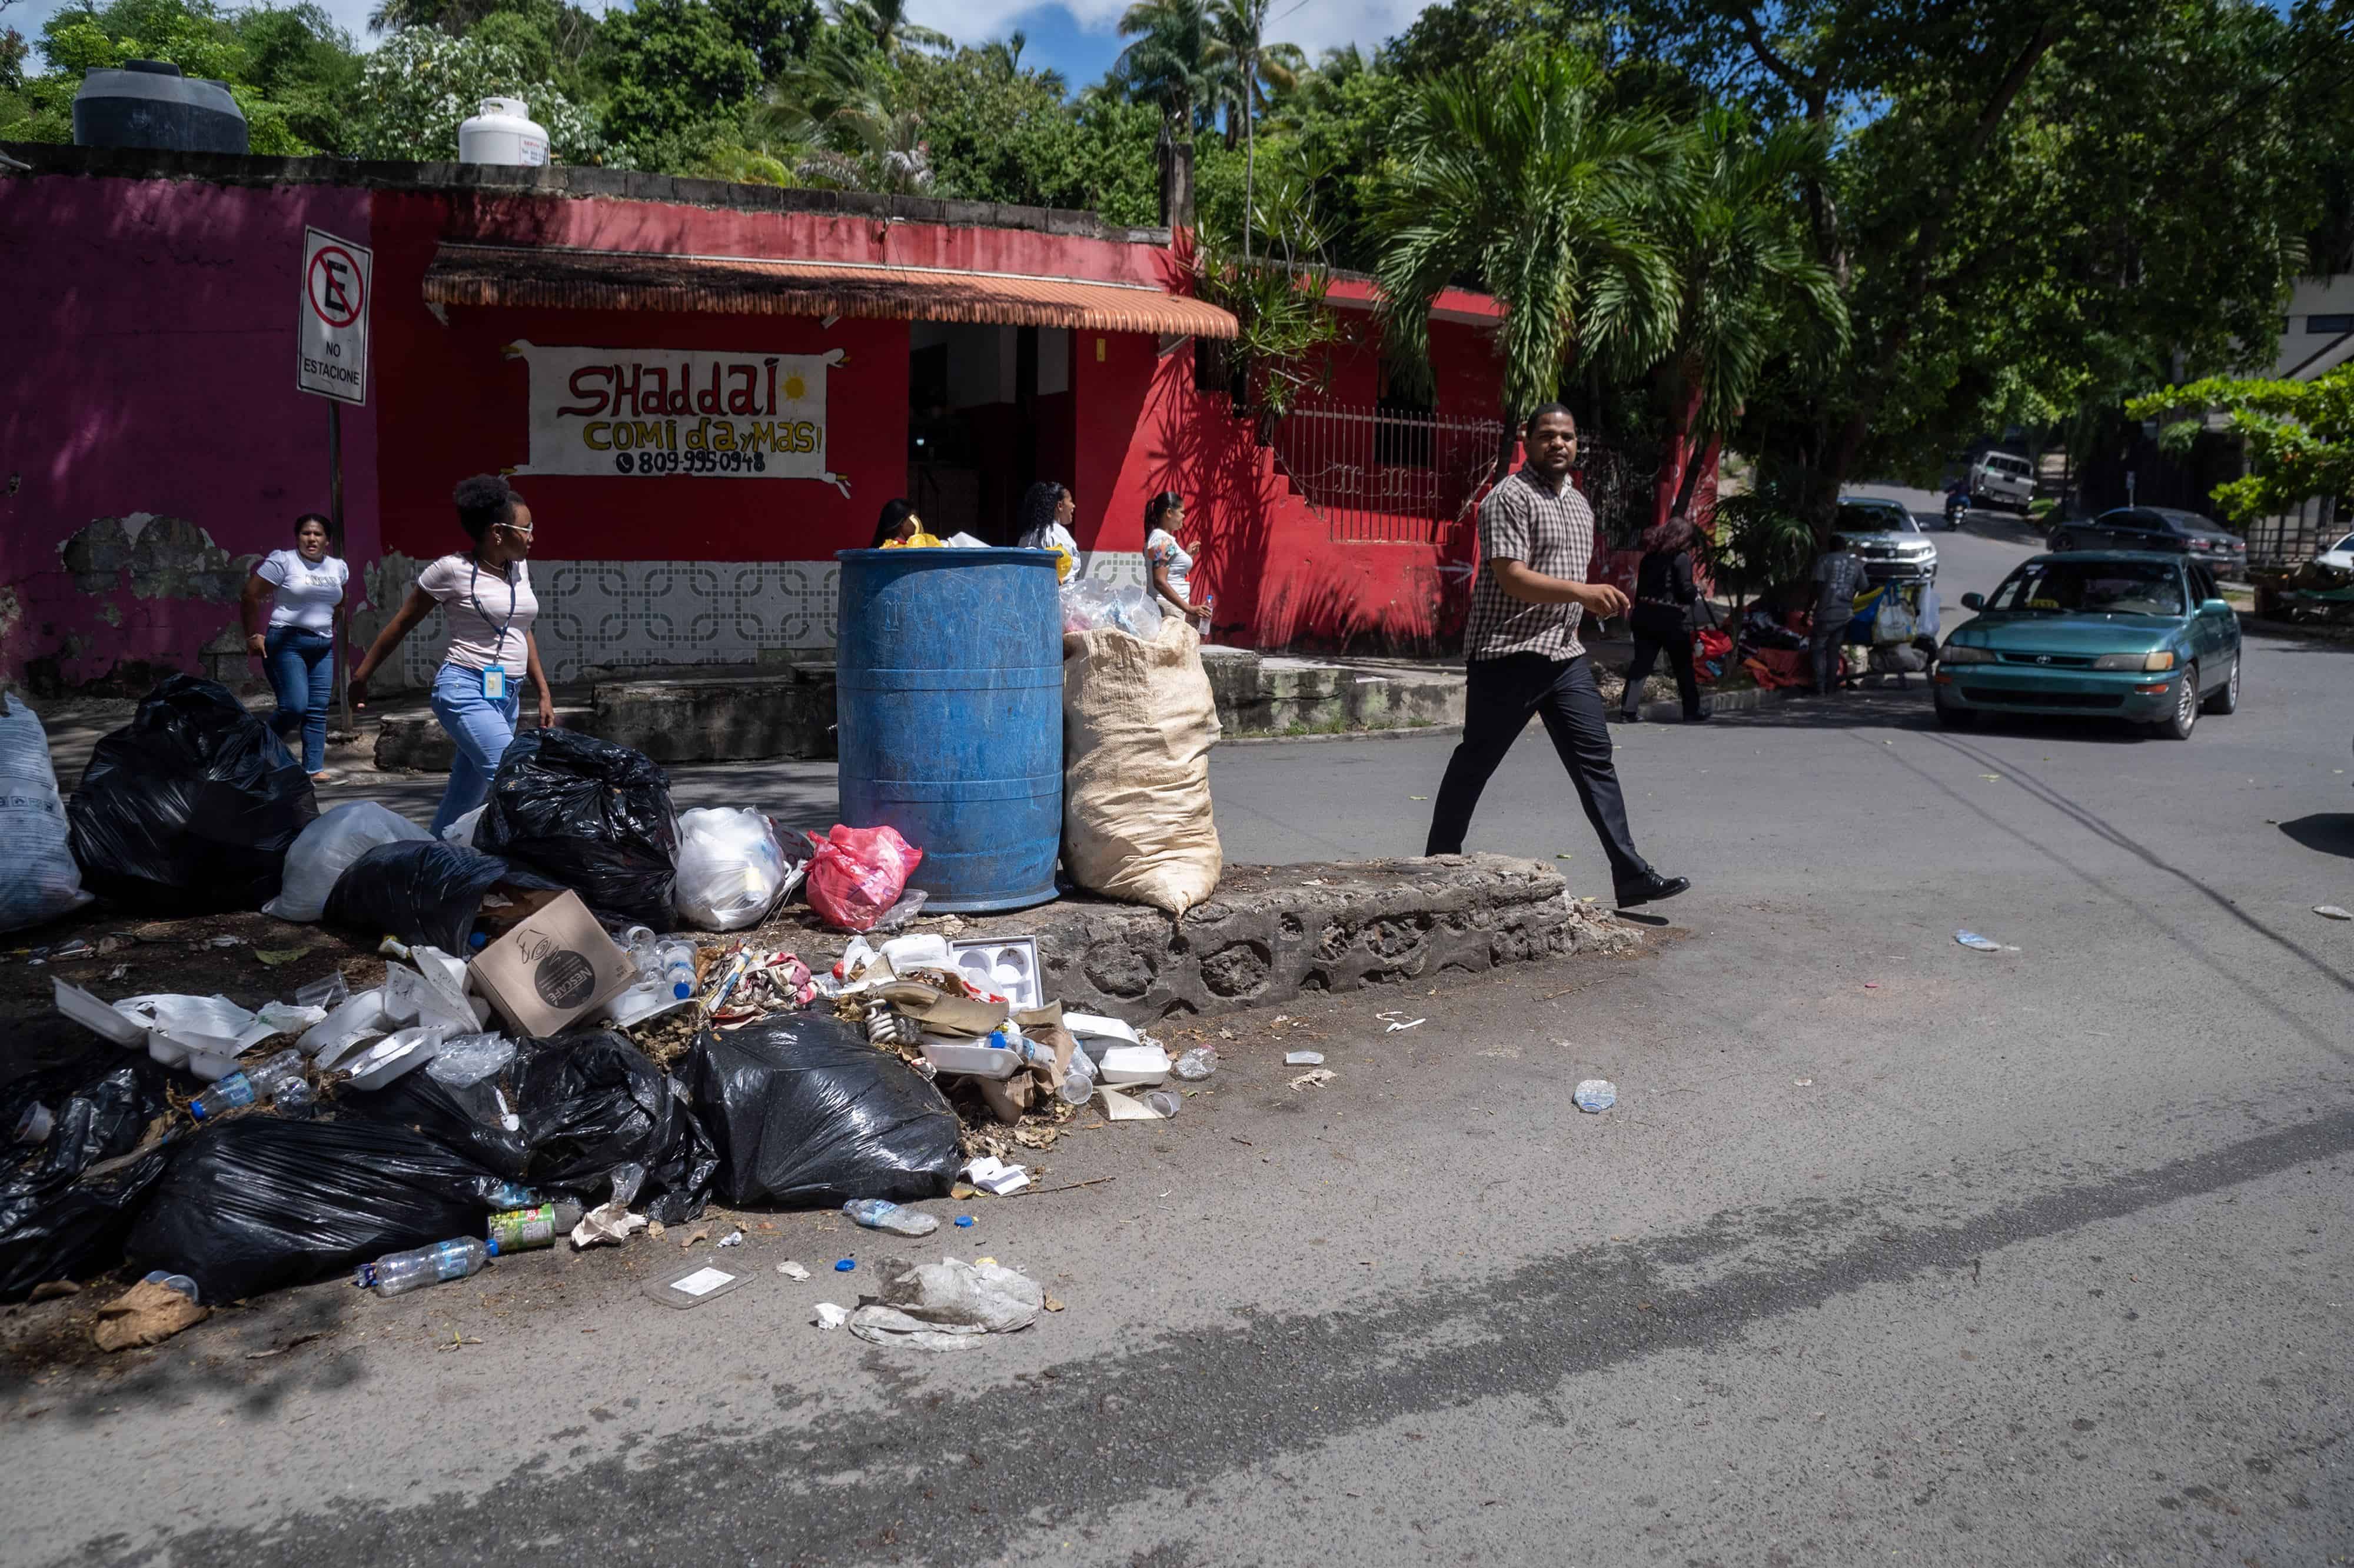 Residuos obstruyen el paso de los ciudadanos. En el Paseo del Yaque casi Av. Coronel Juan María Lora Fernández, en Los Ríos, la basura ocupa aceras y obliga a los transeúntes a dar vueltas a su alrededor para caminar sin pisar los desechos malolientes. Así lo vimos el 6 de octubre.